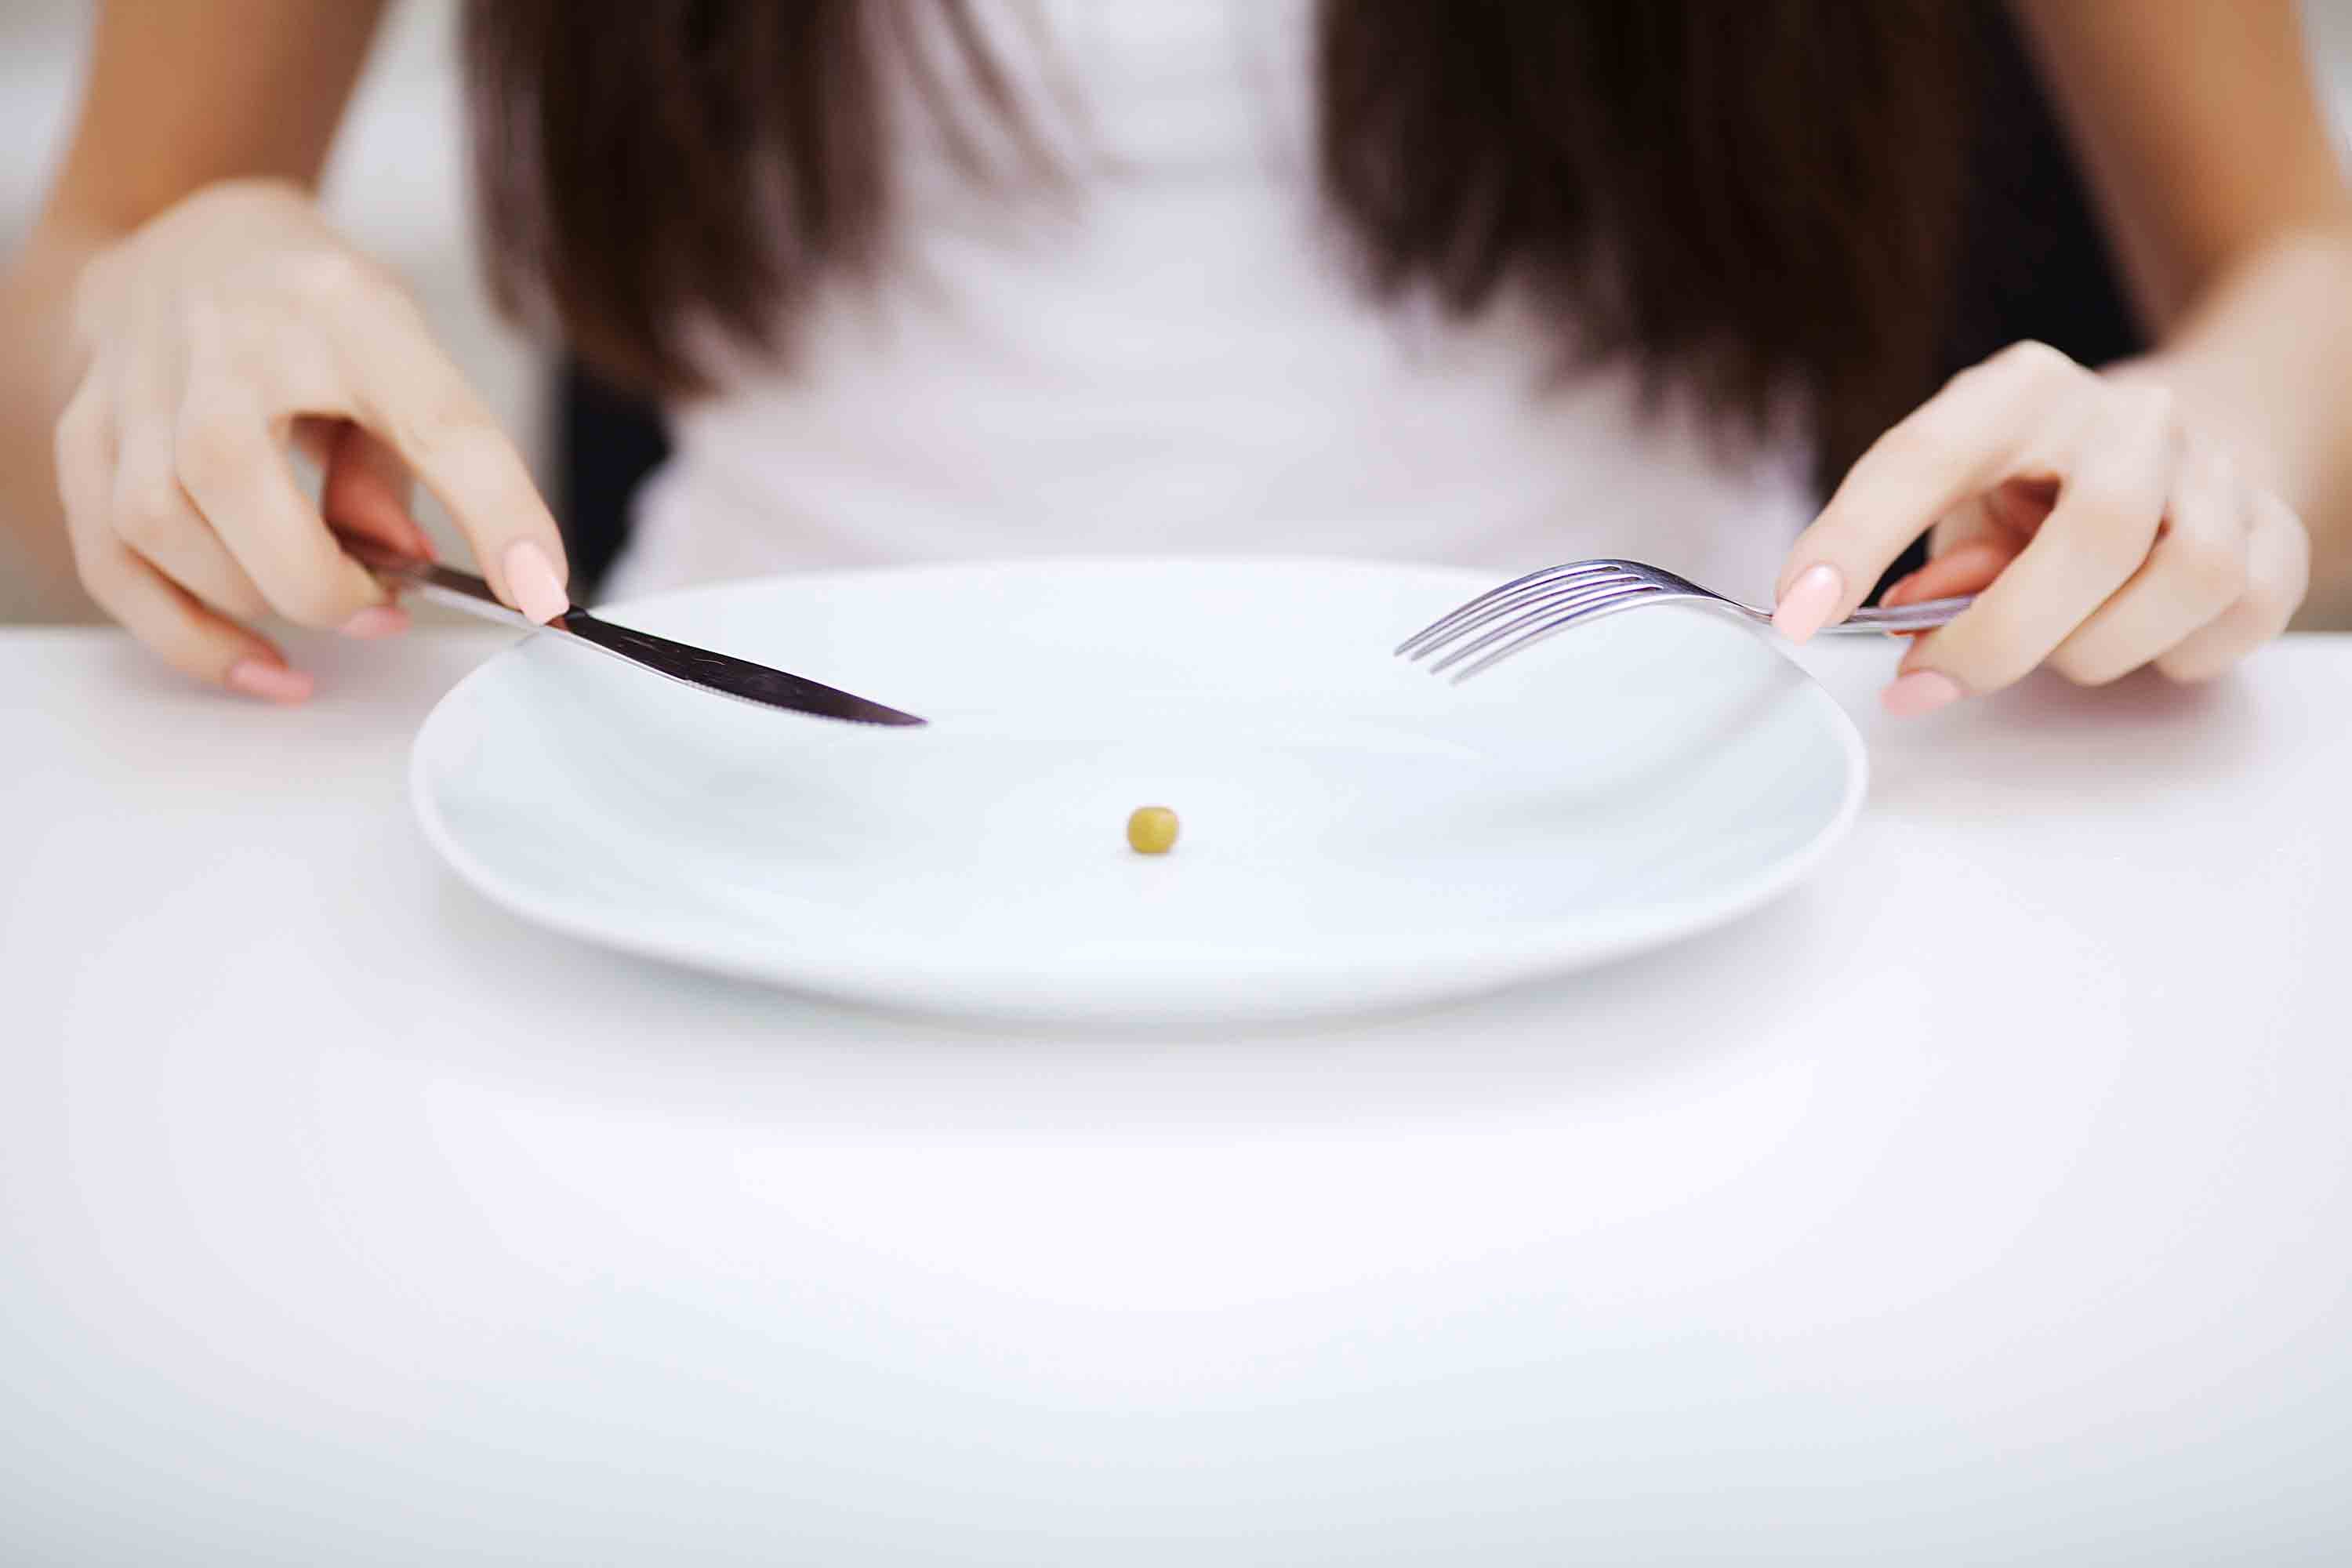 La restriction alimentaire peut être une des causes de l'anorexie mentale